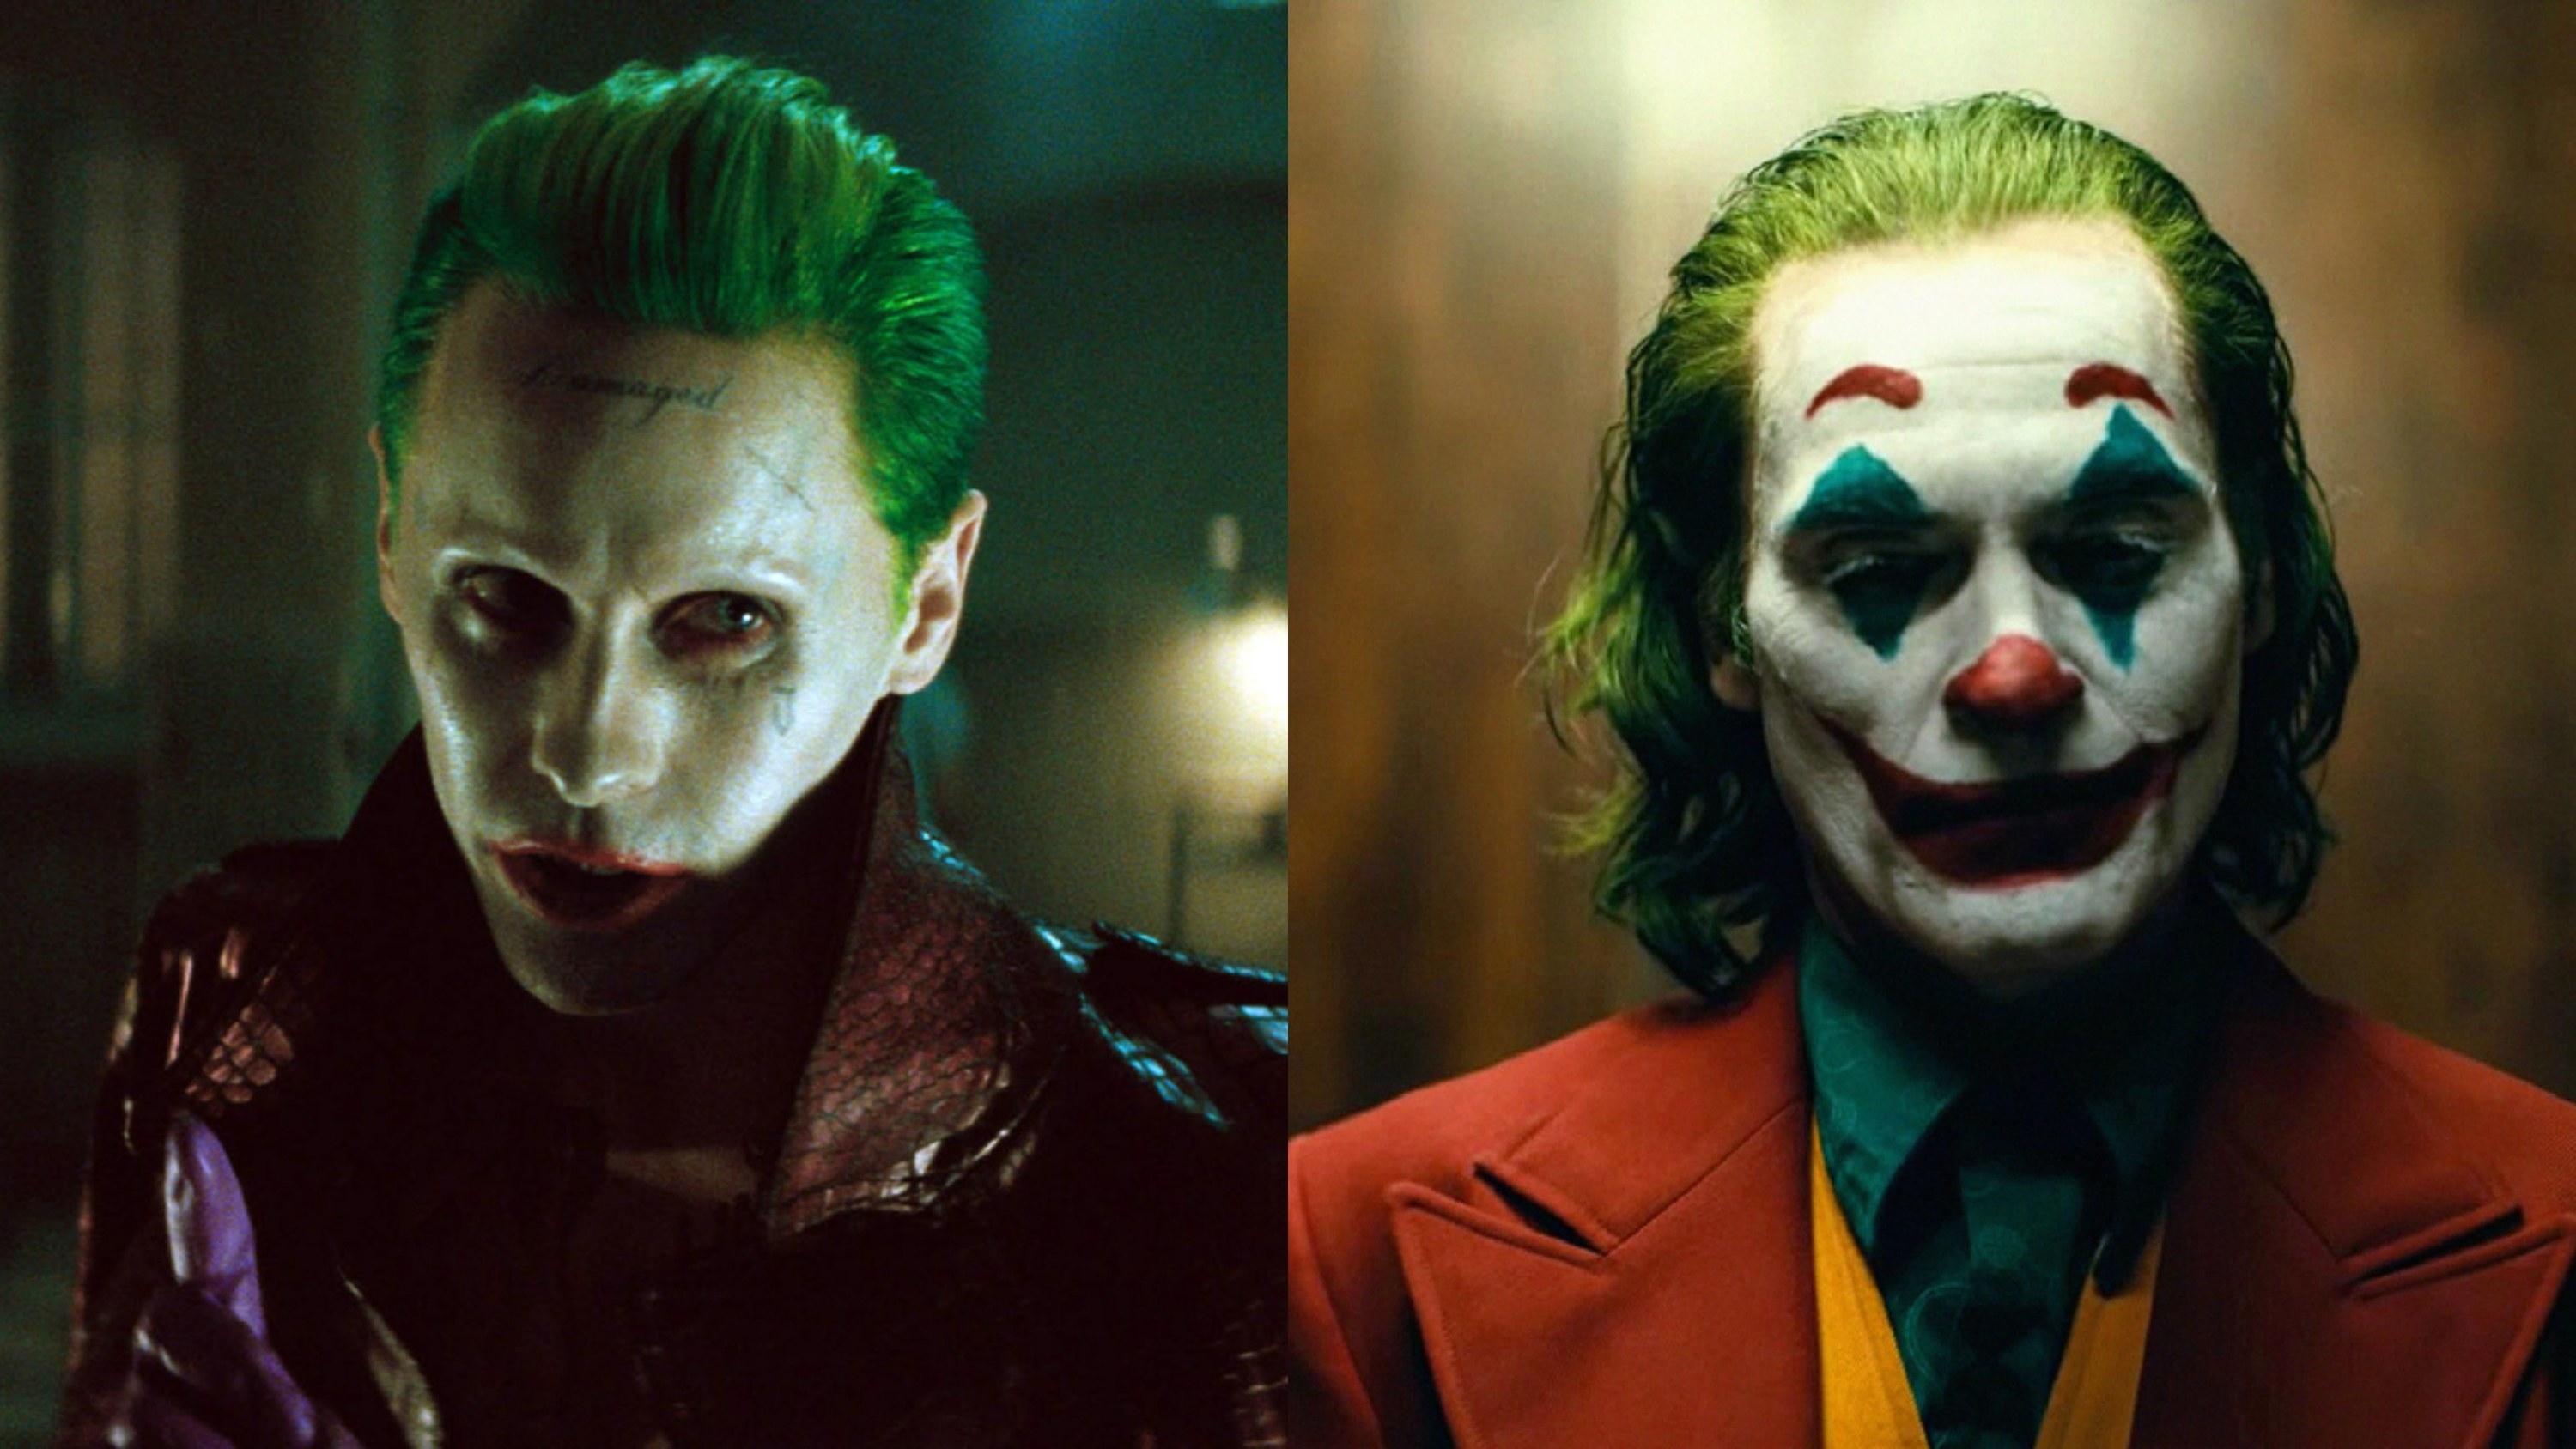 Jared Leto as The Joker vs Joaquin Phoenix as The Joker